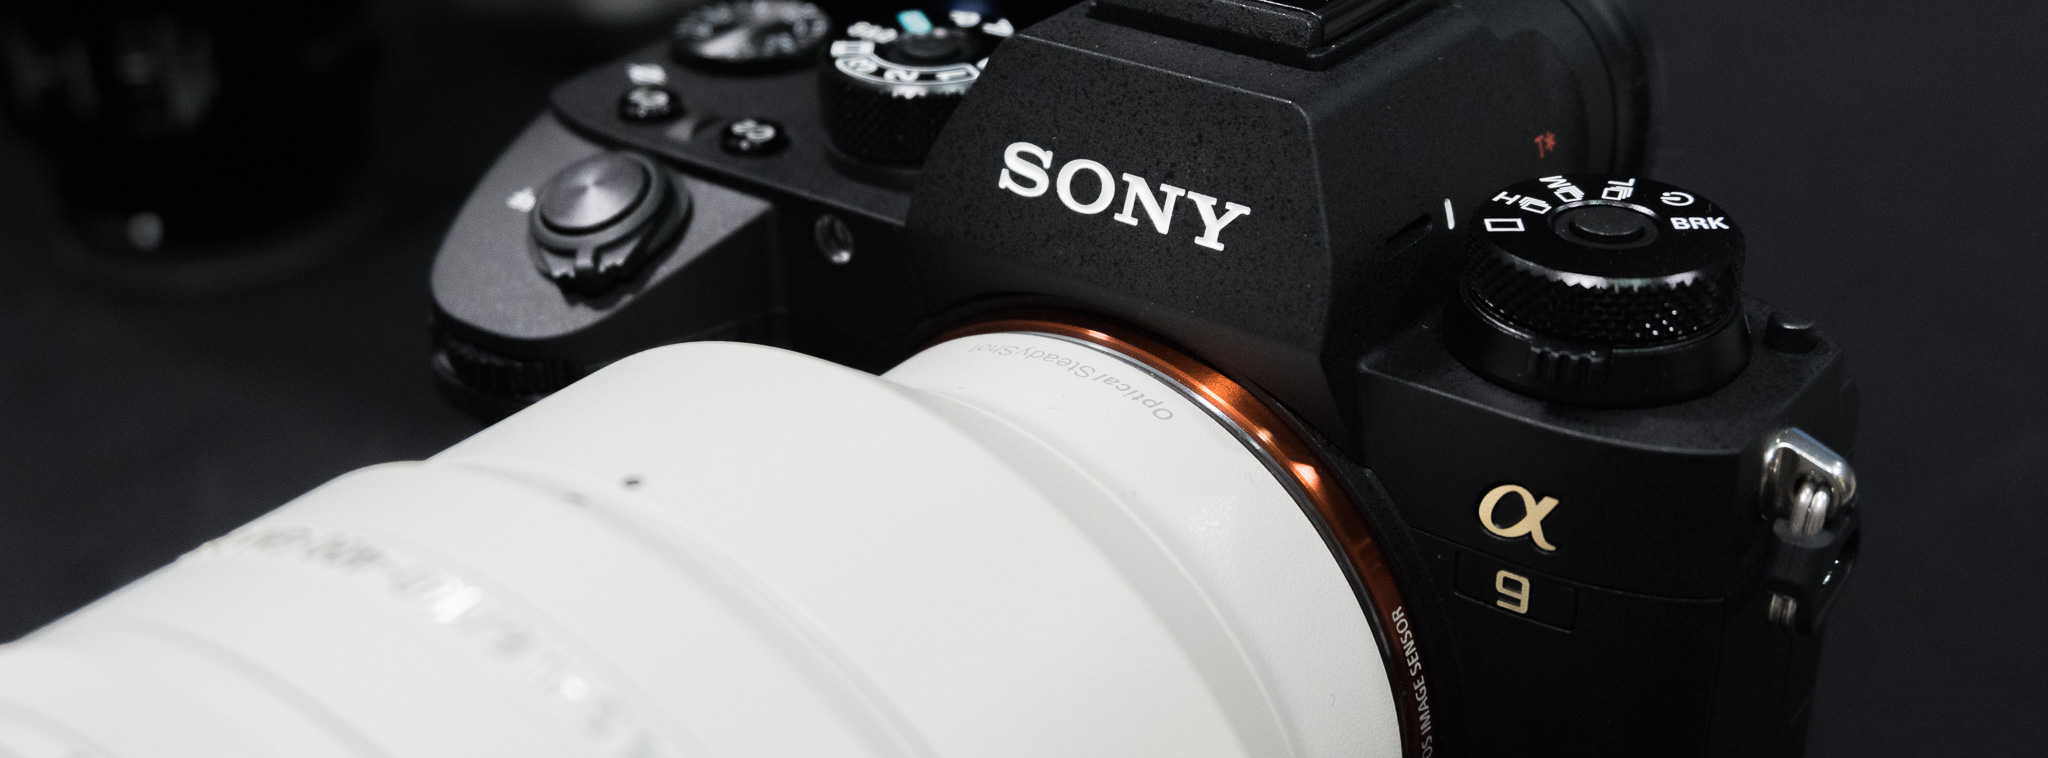 Trên tay Sony A9: máy ảnh mirrorless hoàn hảo nếu có một hệ thống ống kính tốt hơn